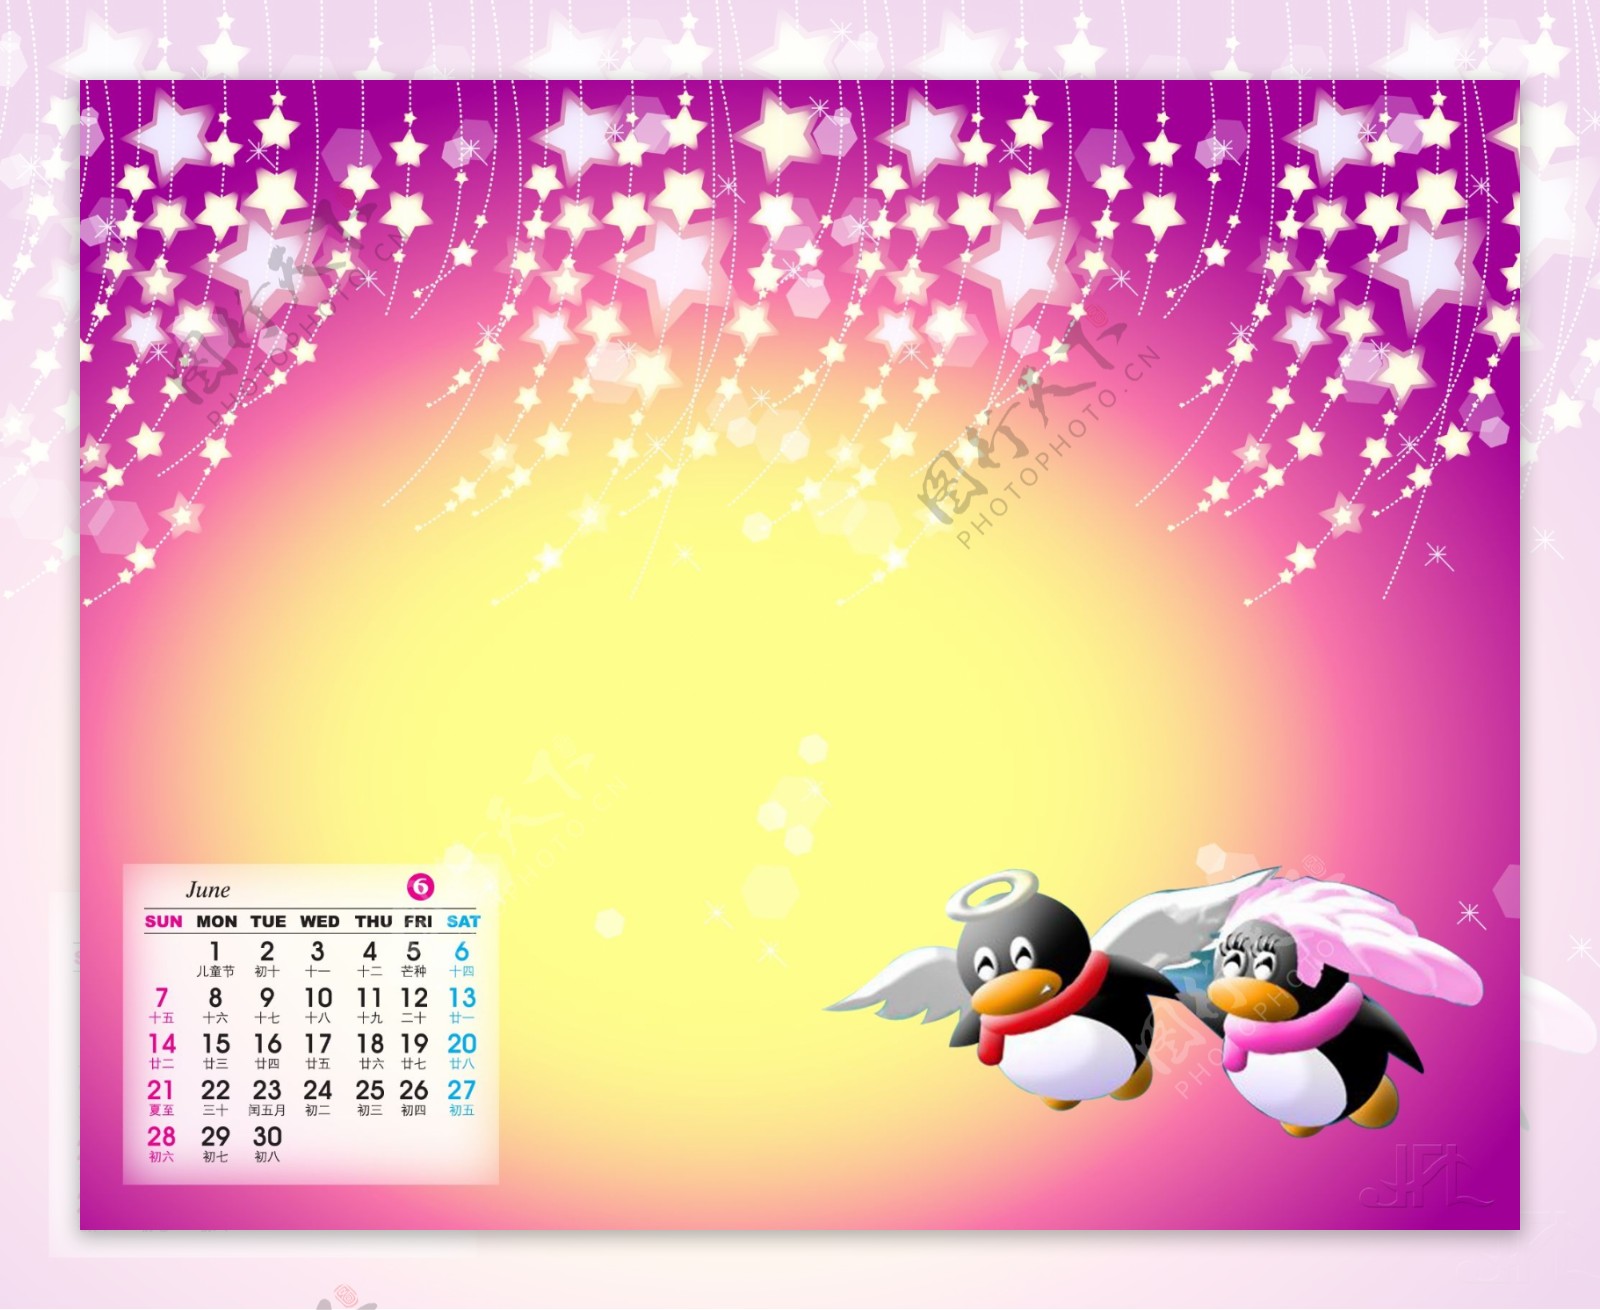 2009年日历模板2009年台历psd模板美好时光QQ情缘全套共13张含封面